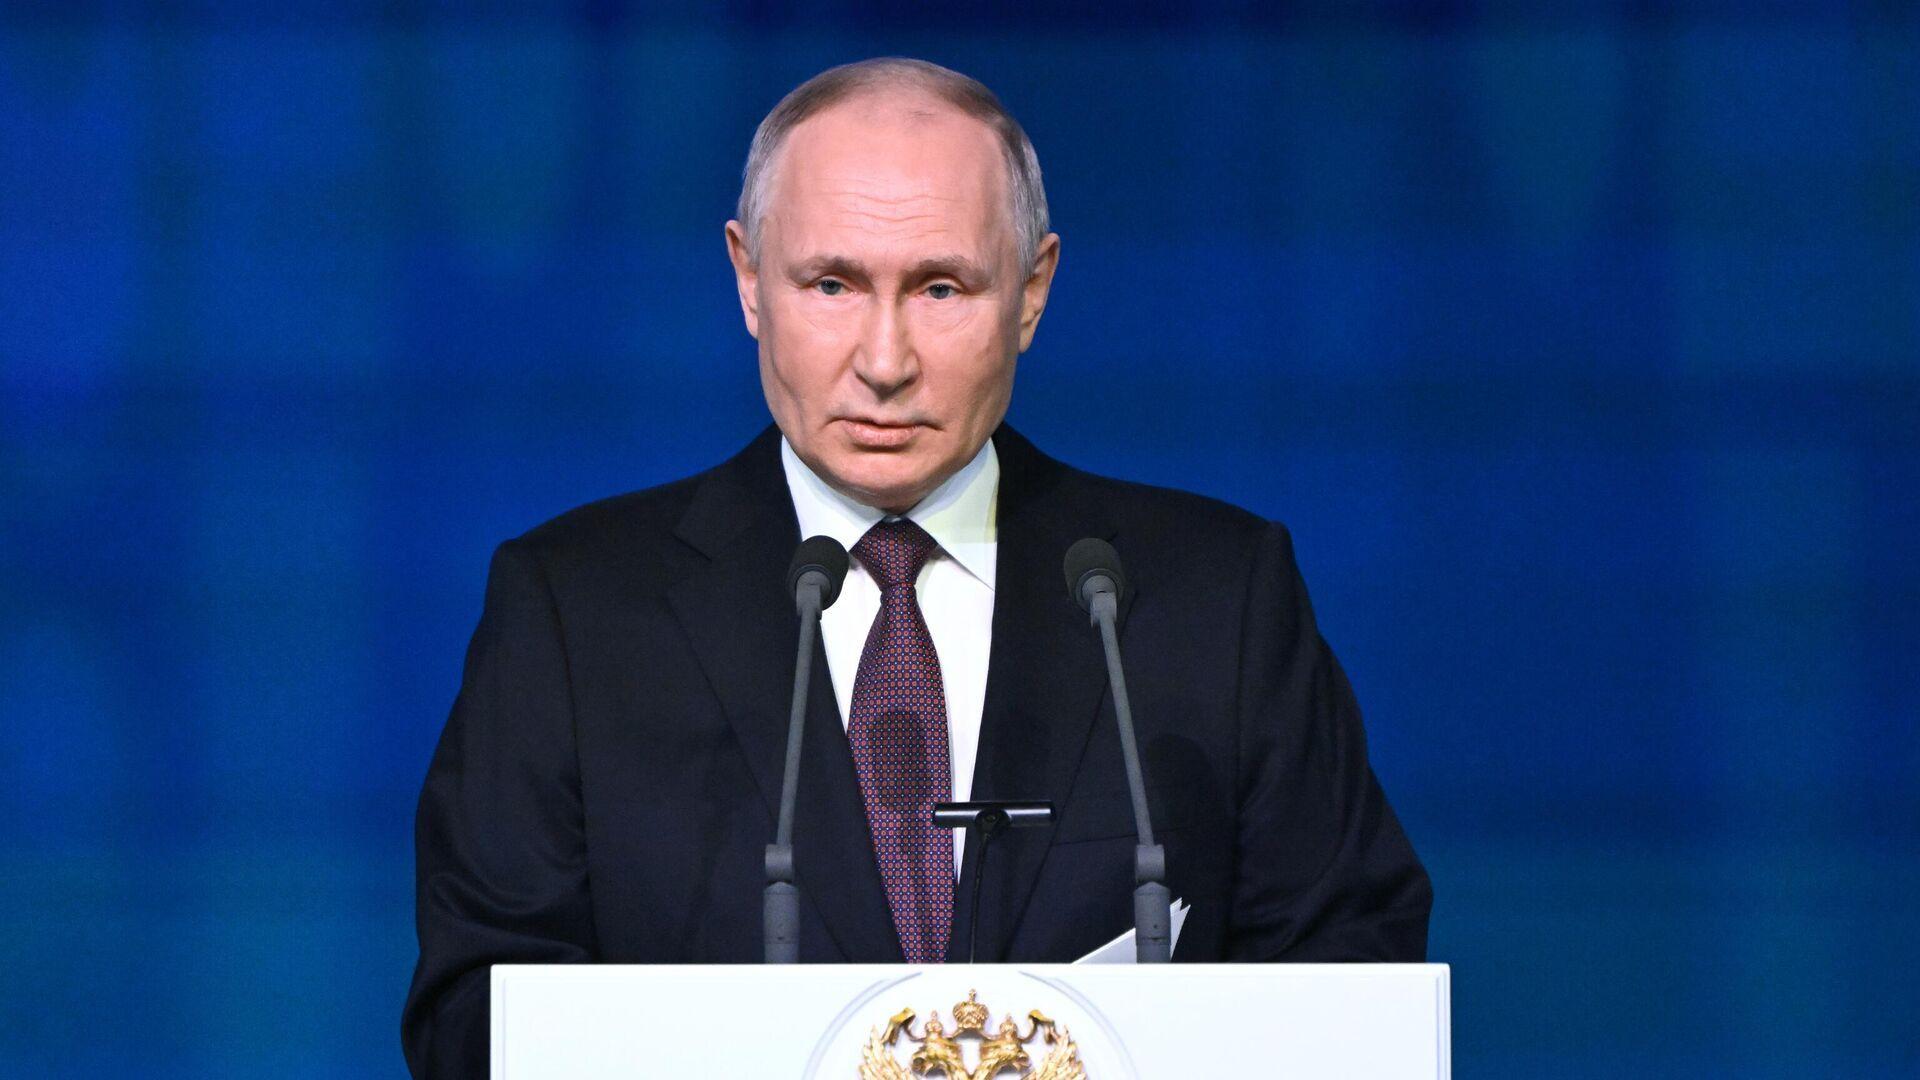 Putin refuses to participate in debates